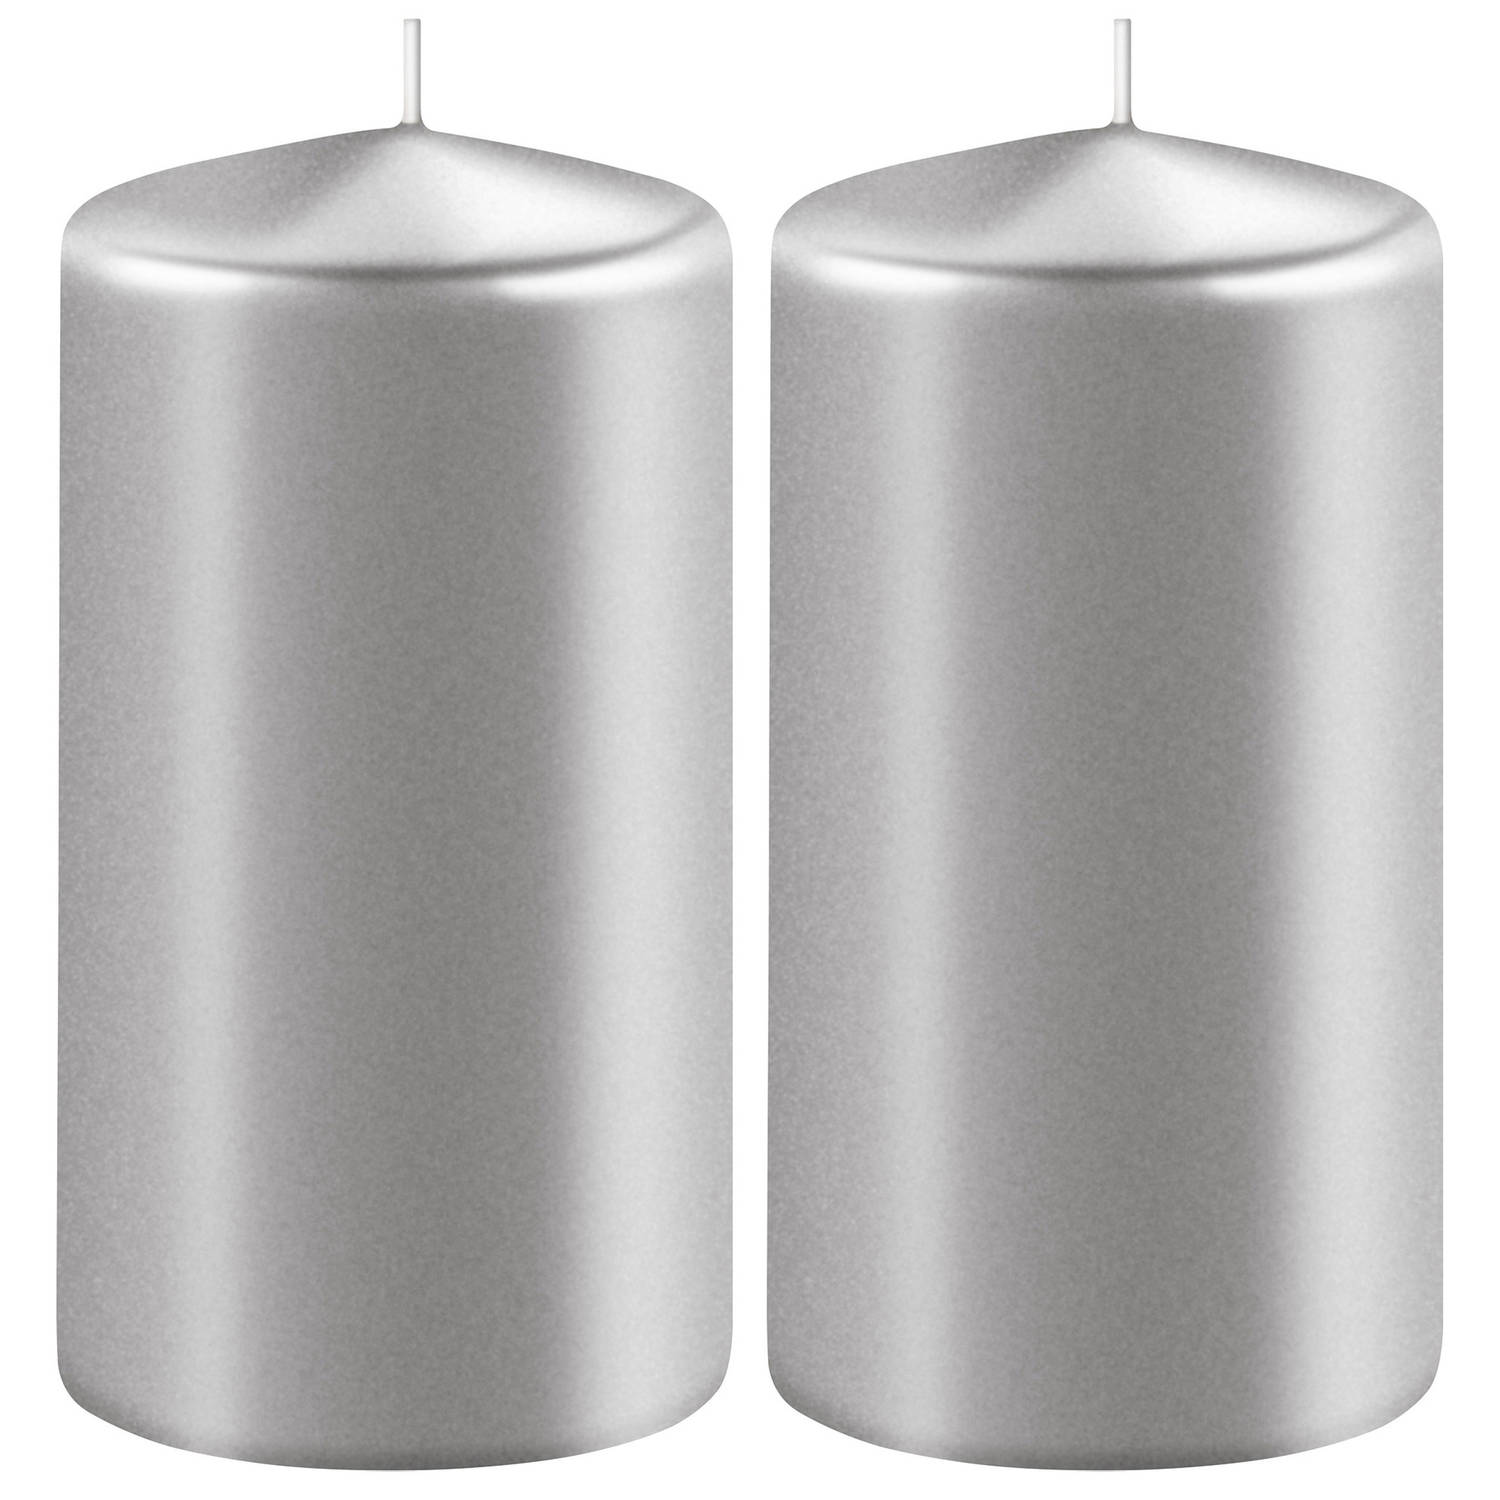 2x Metallic Zilveren Cilinderkaarsen/stompkaarsen 6 X 15 Cm 58 Branduren - Stompkaarsen - Silver